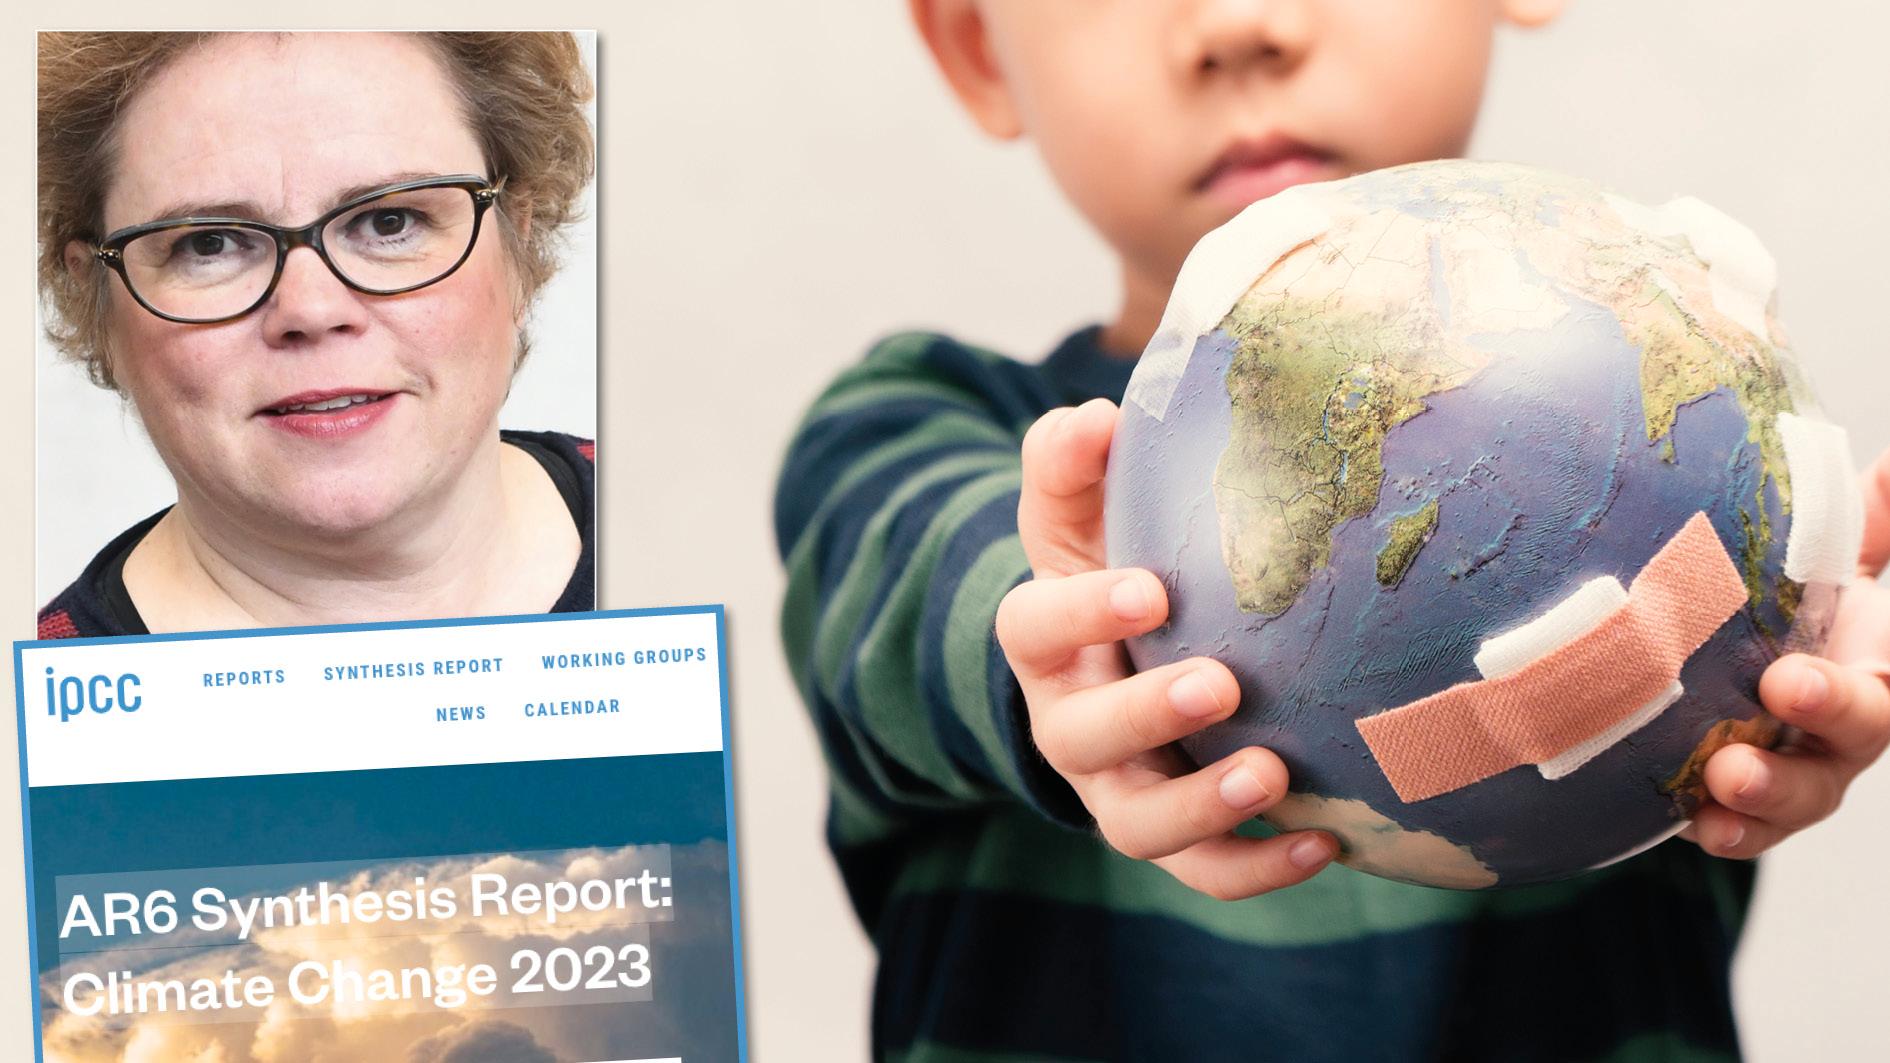 Den nya IPCC-rapporten visar att vi måste ändra vår livsstil dramatiskt. Finns det något som kan få oss att göra detta? Ja, våra barn, skriver Maria Wolrath Söderberg som forskar om drivkrafter för omställning.